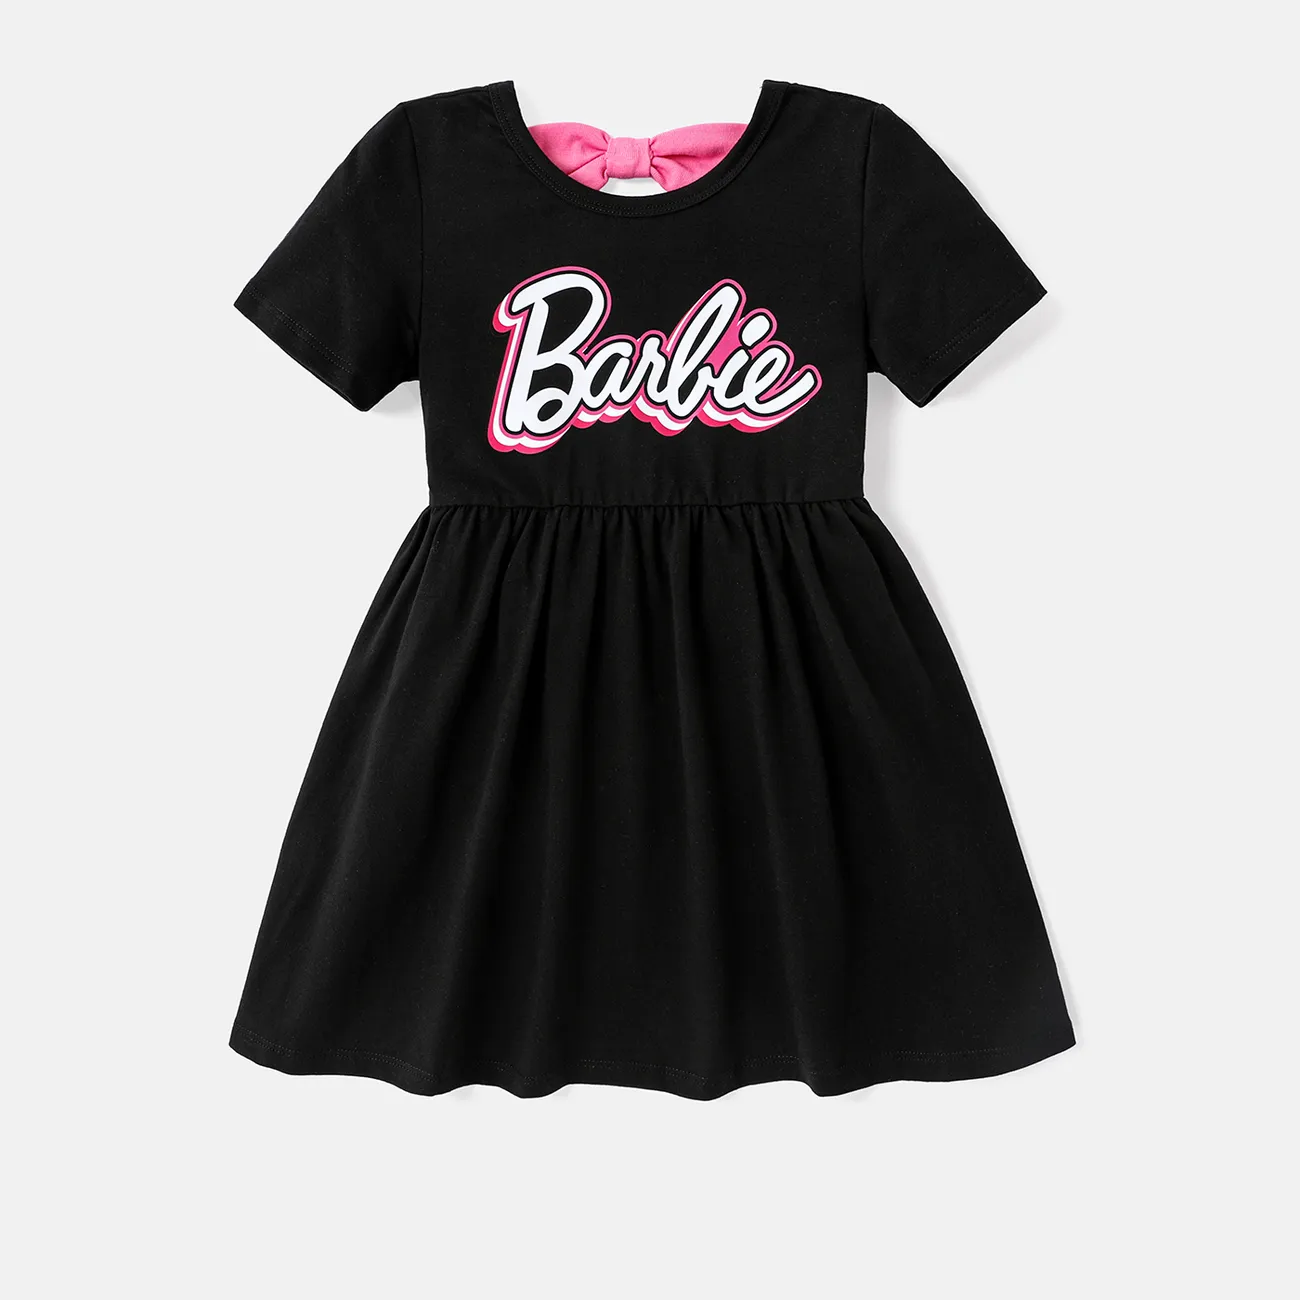 Barbie Toddler/Kid Girl Back Bowknot Design Cotton Short-sleeve Dress Black big image 1